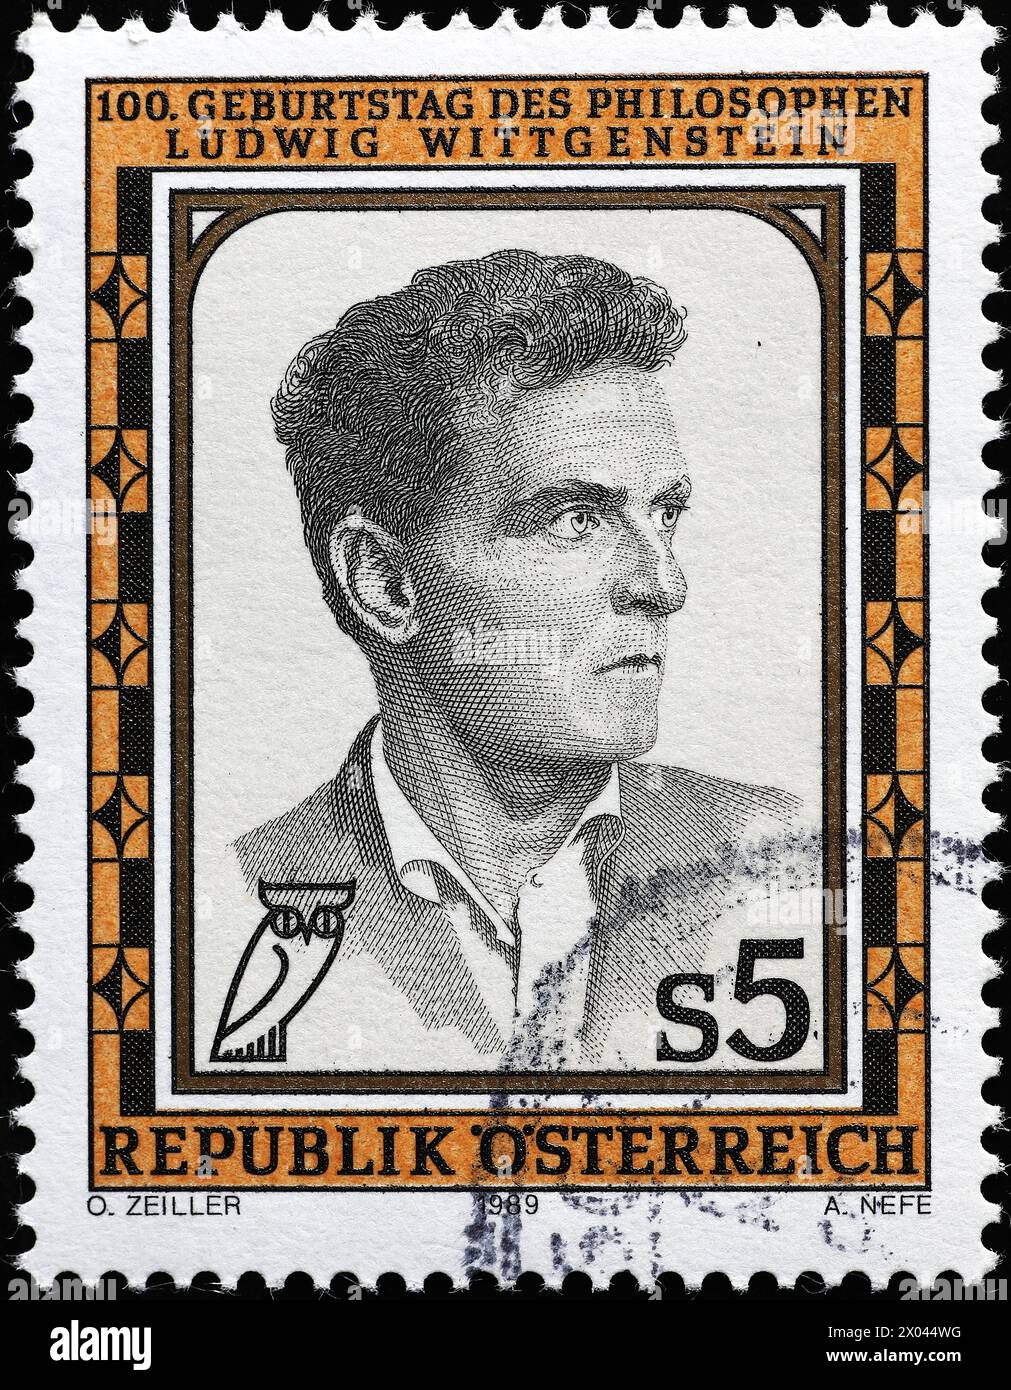 Retrato de Ludwig Wittgenstein en el sello postal austríaco Foto de stock